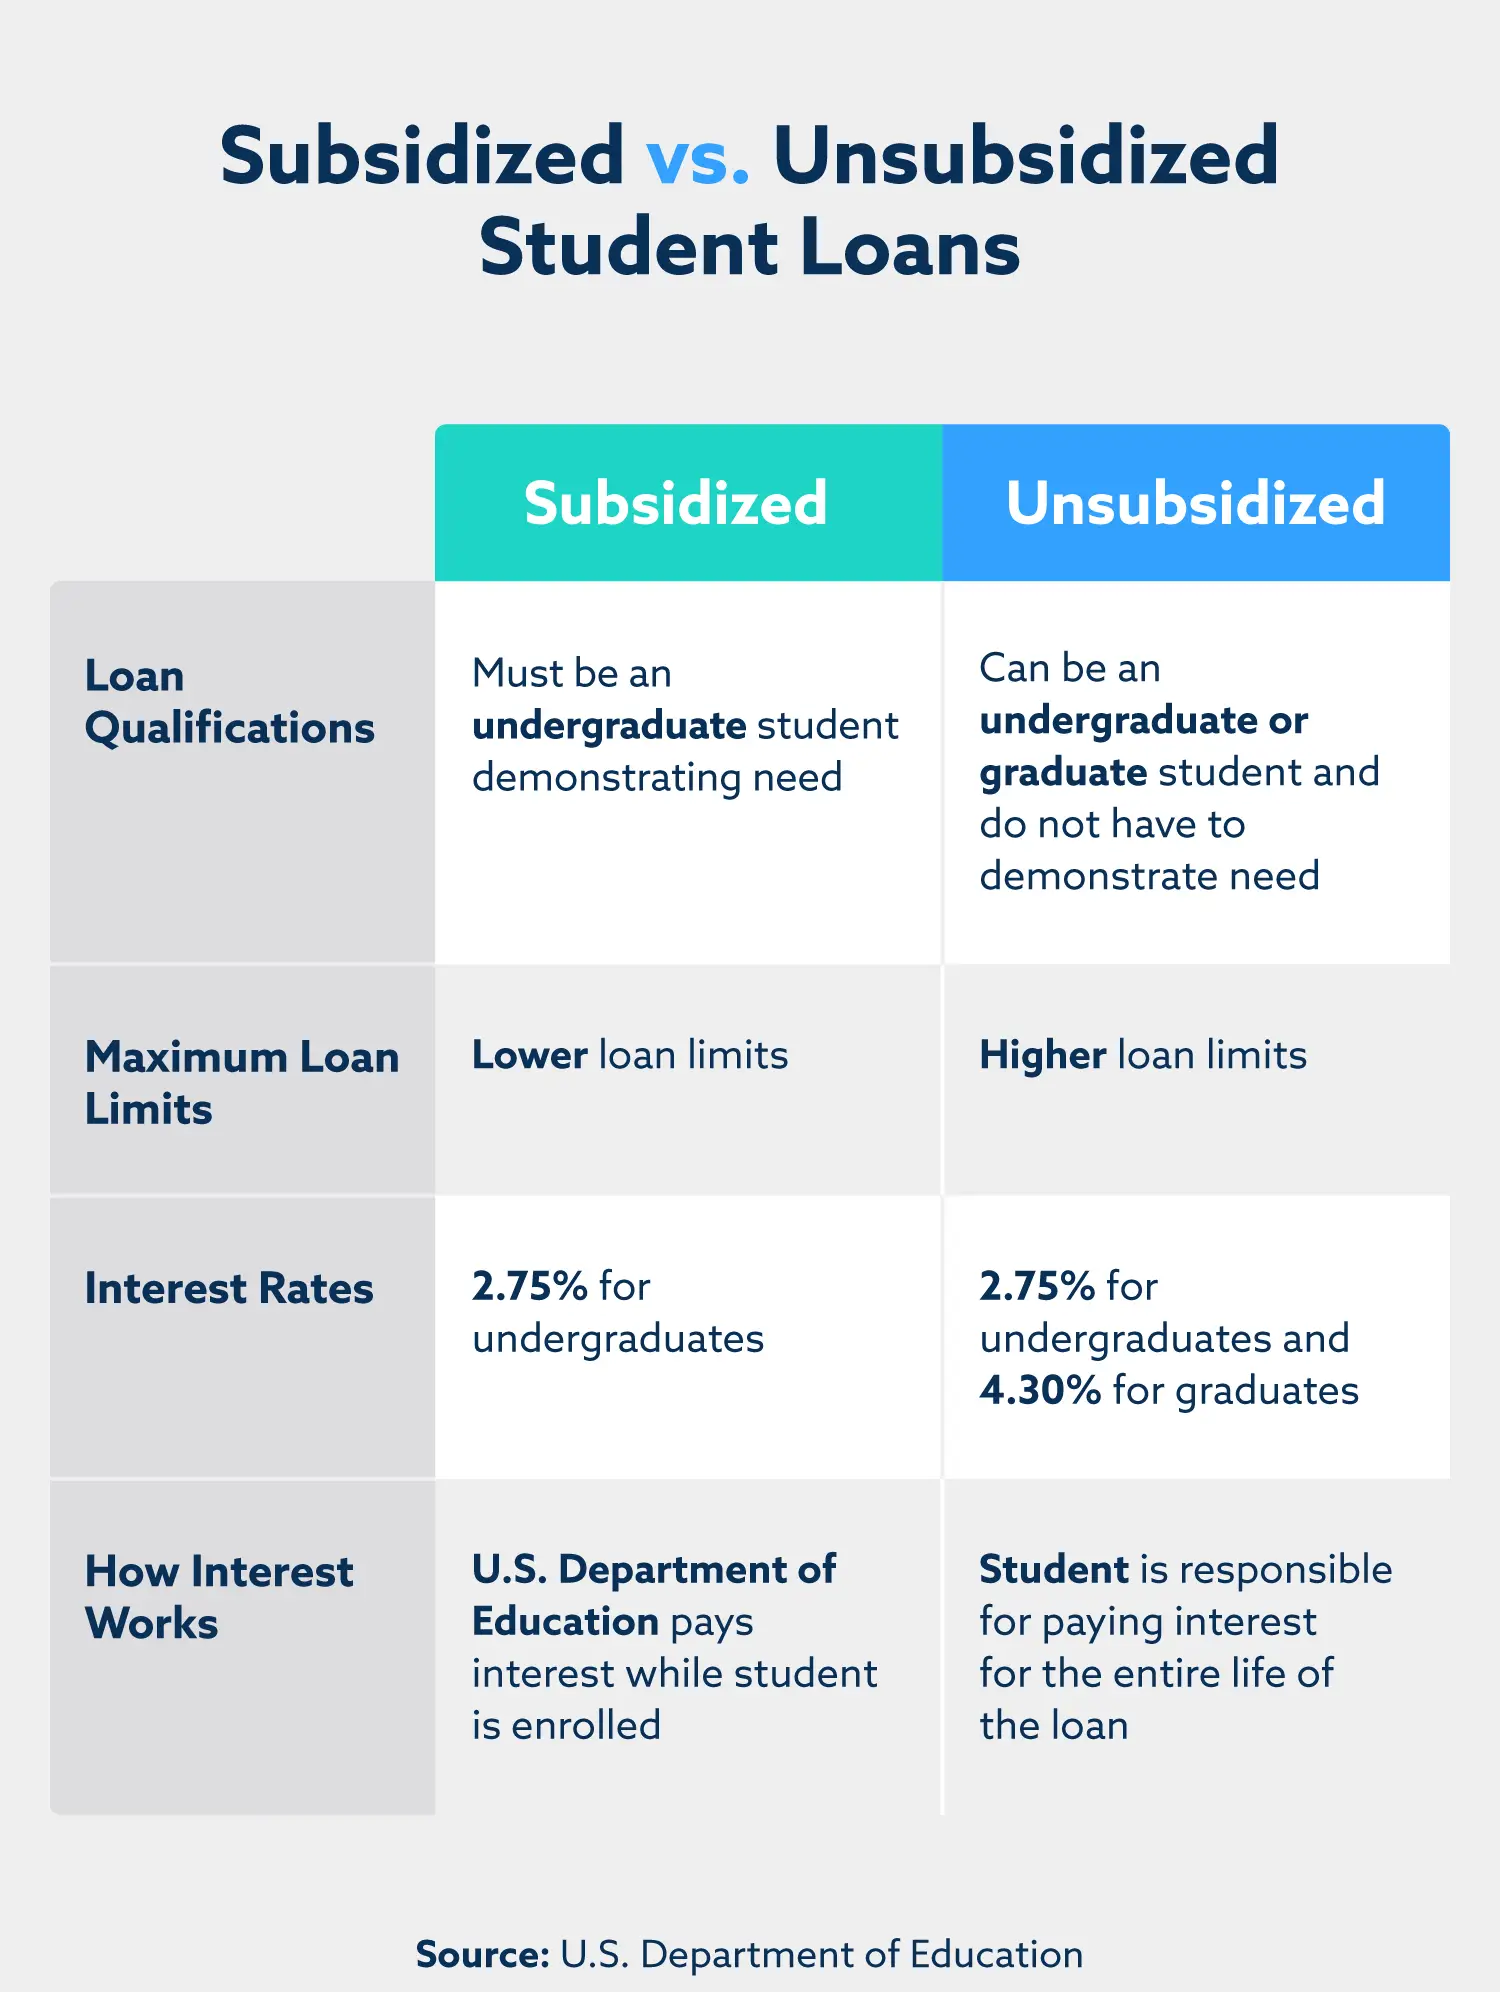 Subsidized vs. unsubsidized loans